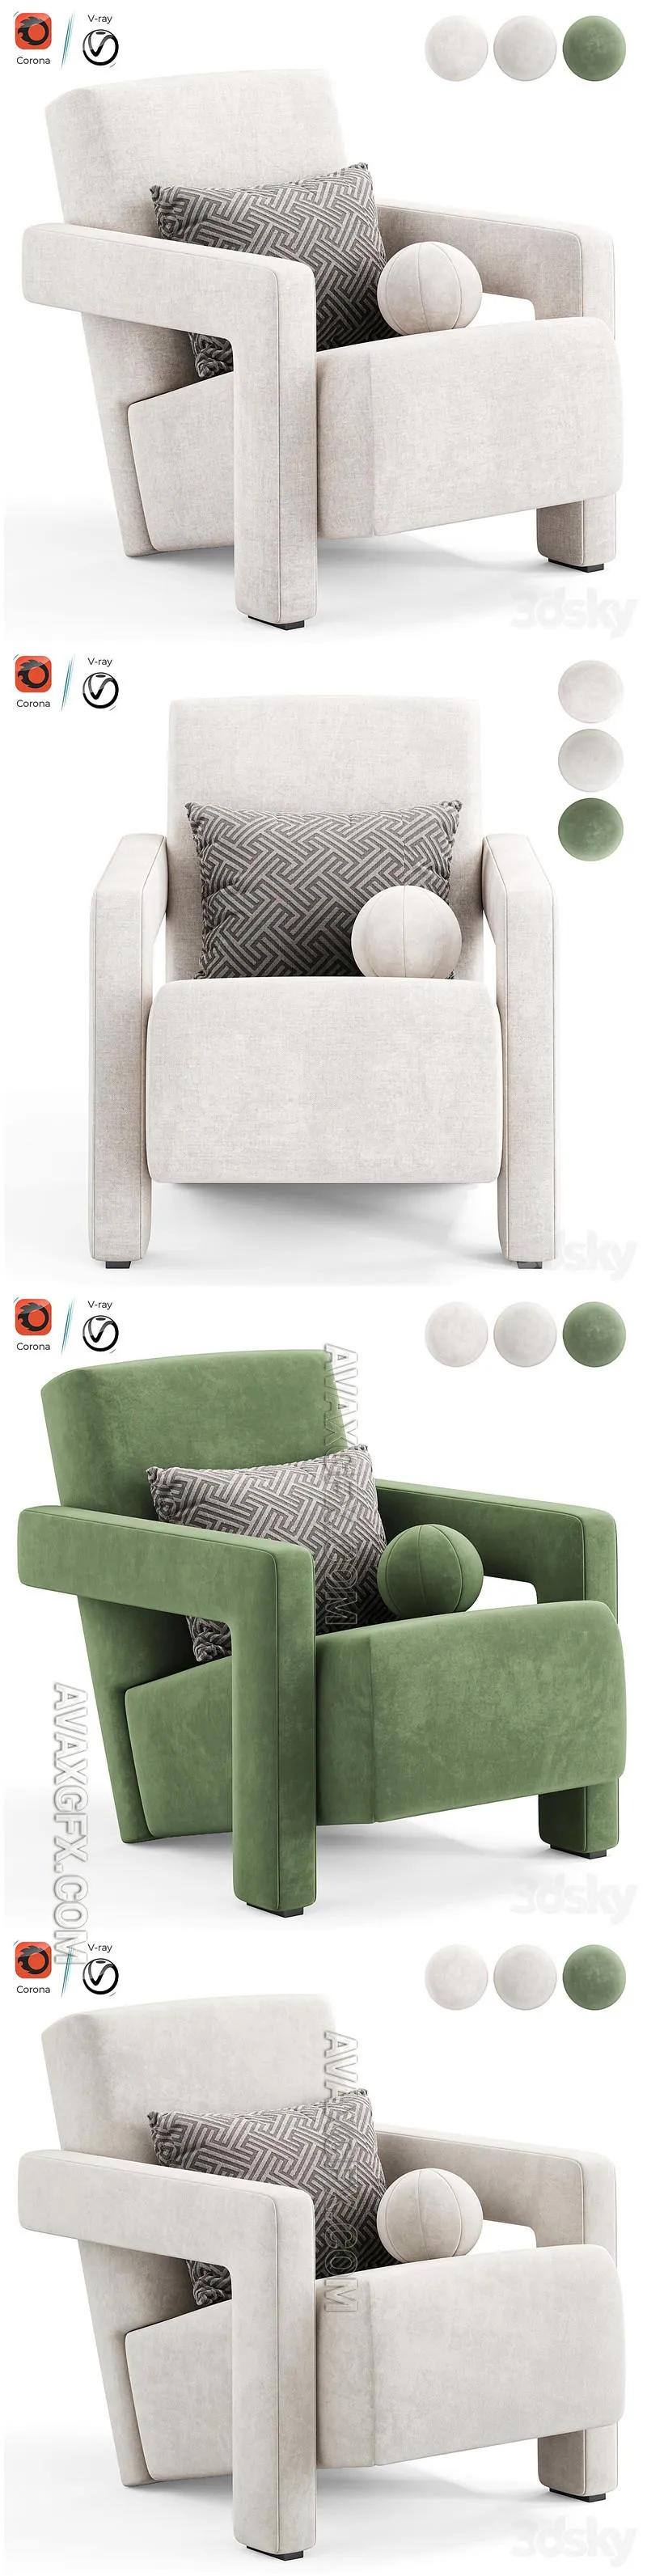 Utrecht armchair by Cassina - 3D Model MAX